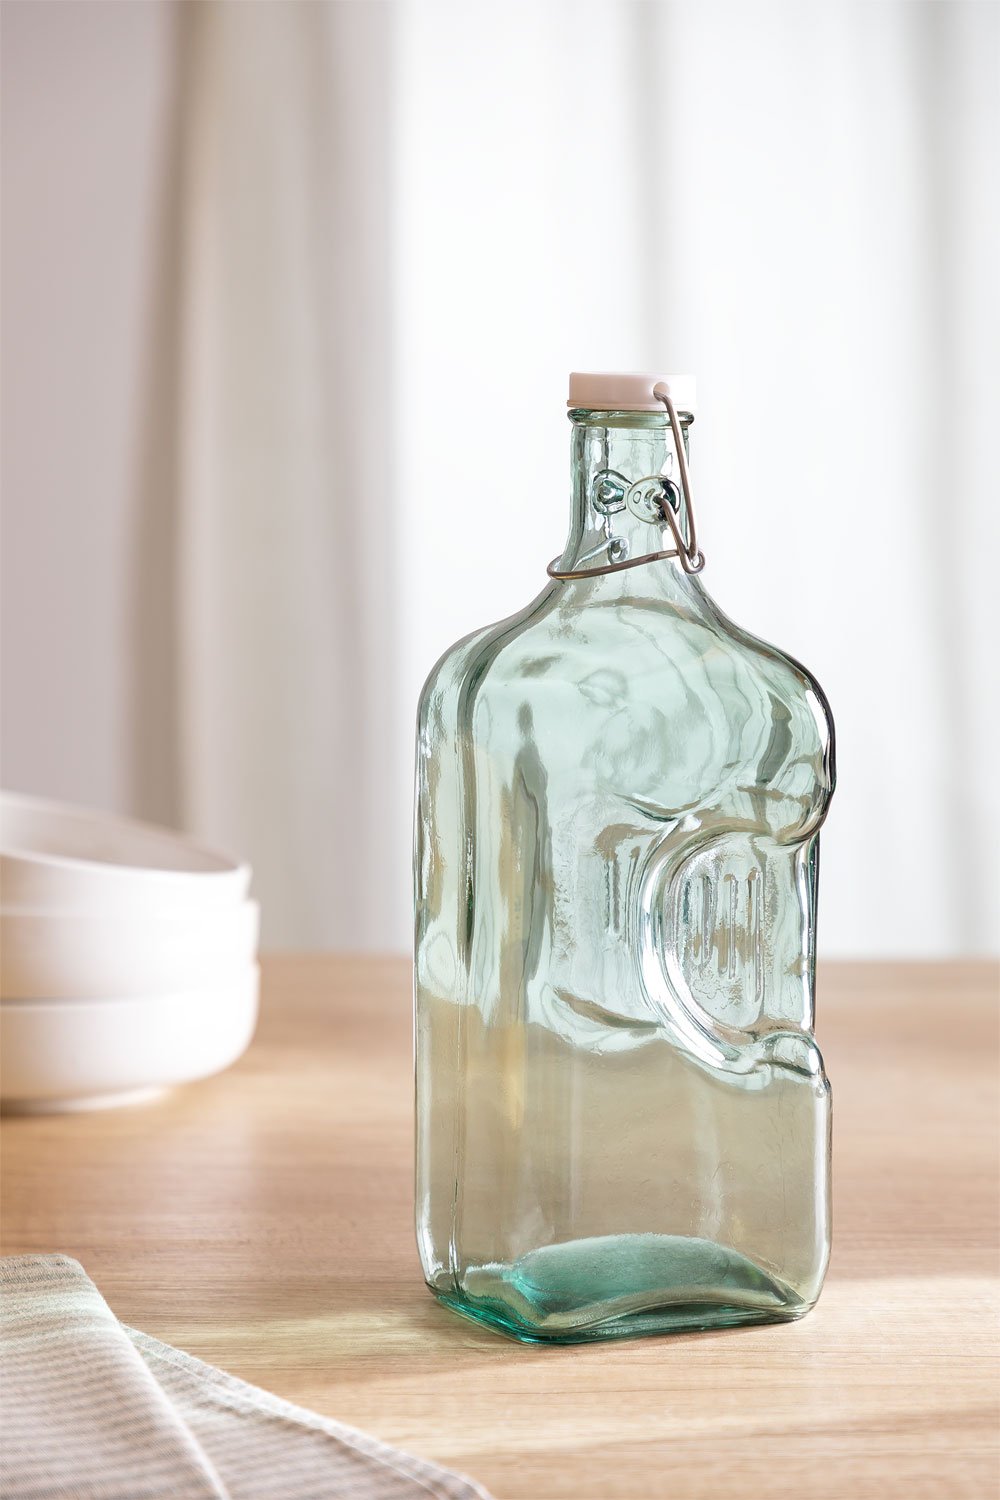 botella agua cristal 2 litros – Compra botella agua cristal 2